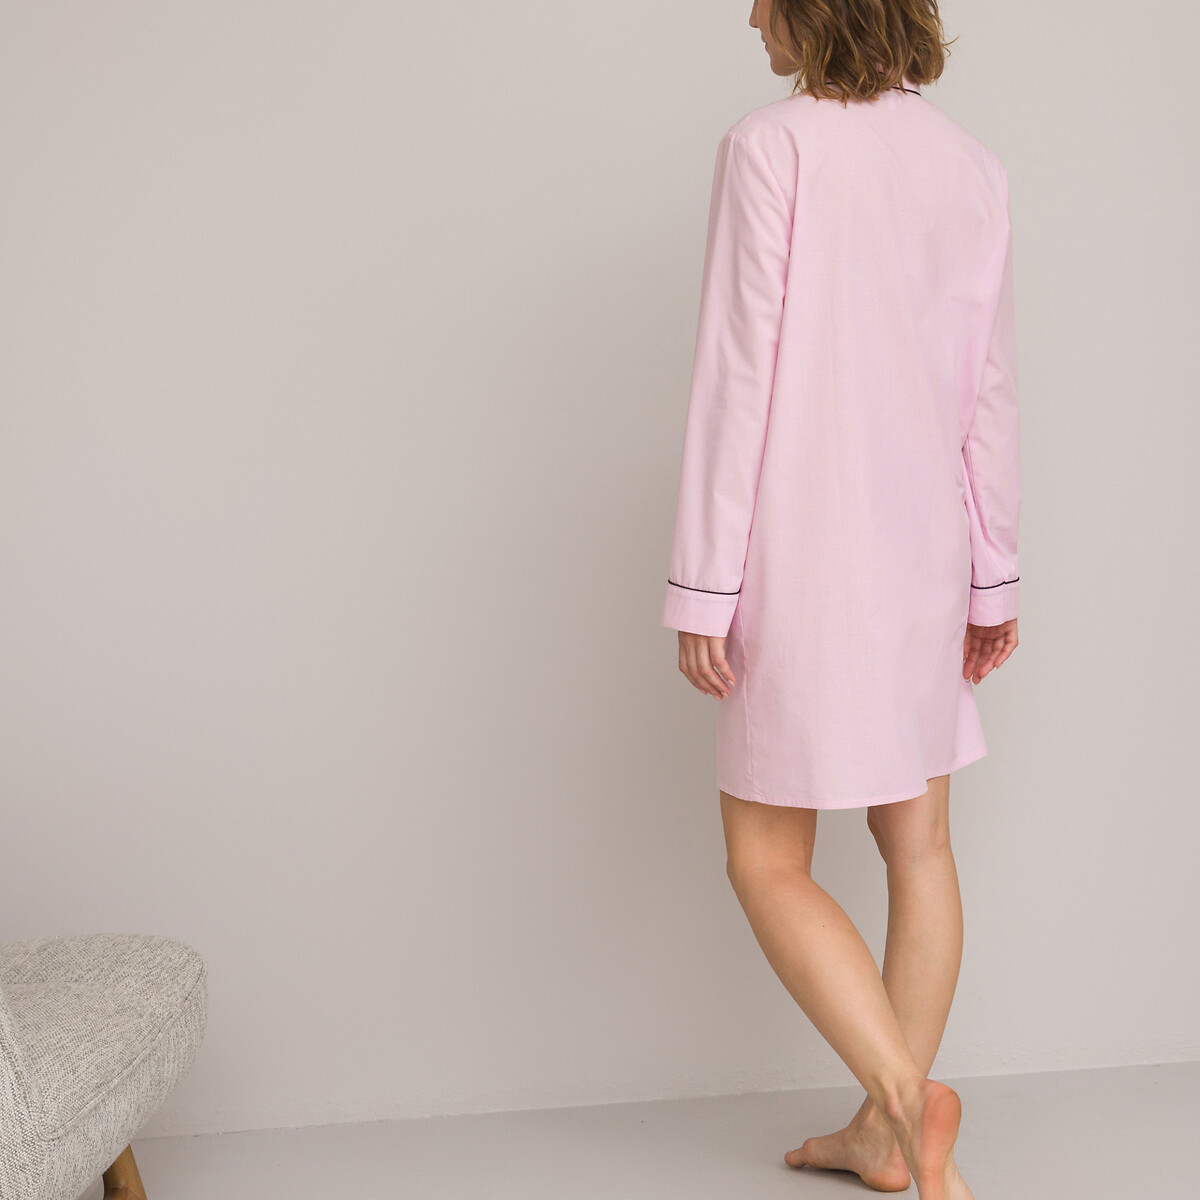 Рубашка Из ткани шамбре из хлопка 36 (FR) - 42 (RUS) розовый LaRedoute, размер 36 (FR) - 42 (RUS) Рубашка Из ткани шамбре из хлопка 36 (FR) - 42 (RUS) розовый - фото 2